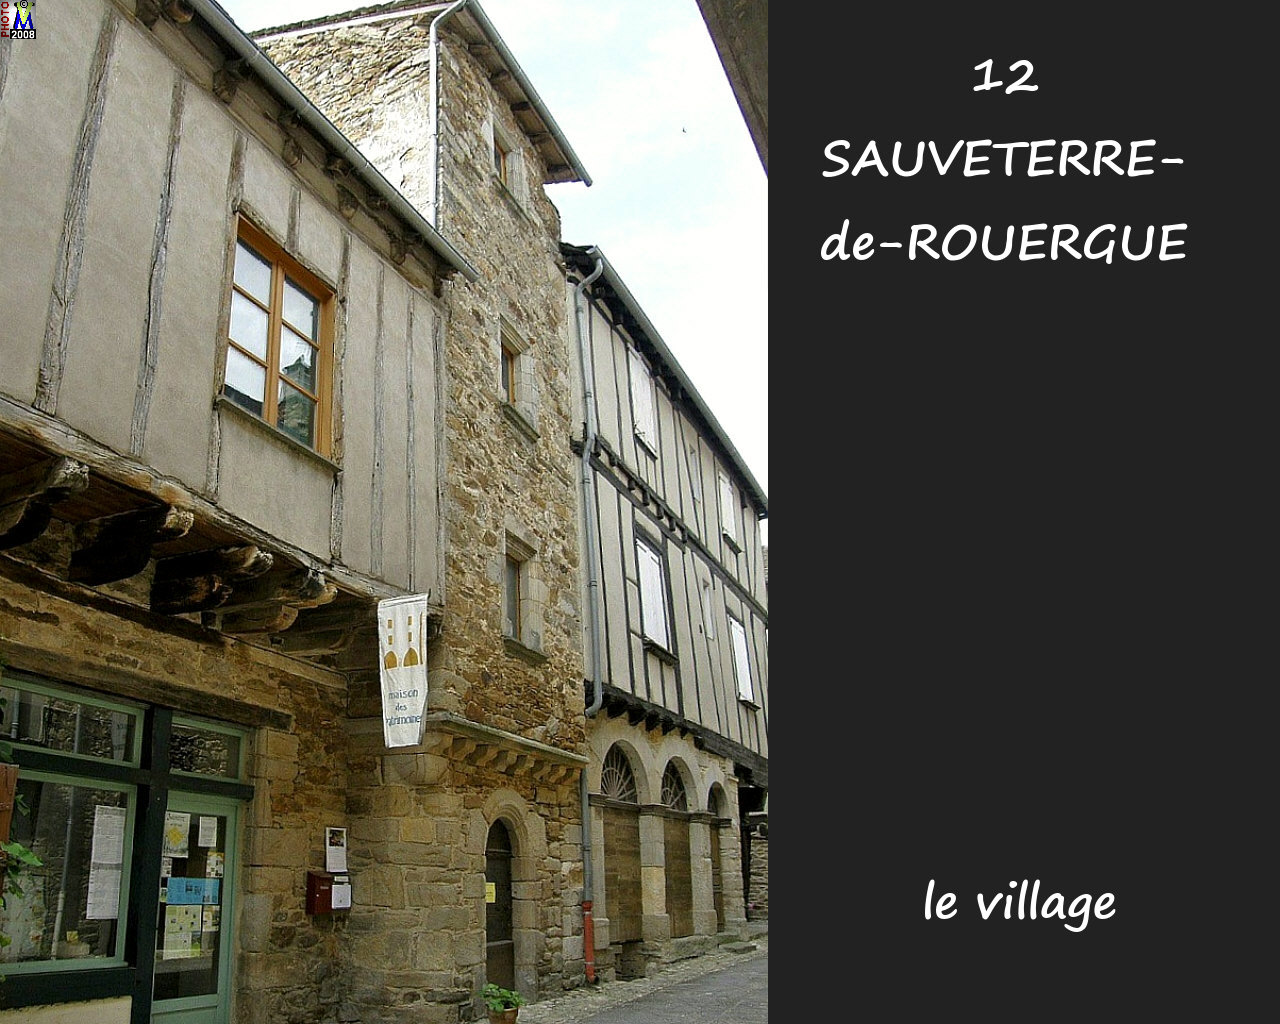 12SAUVETERRE-ROUERGUE_village_168.jpg